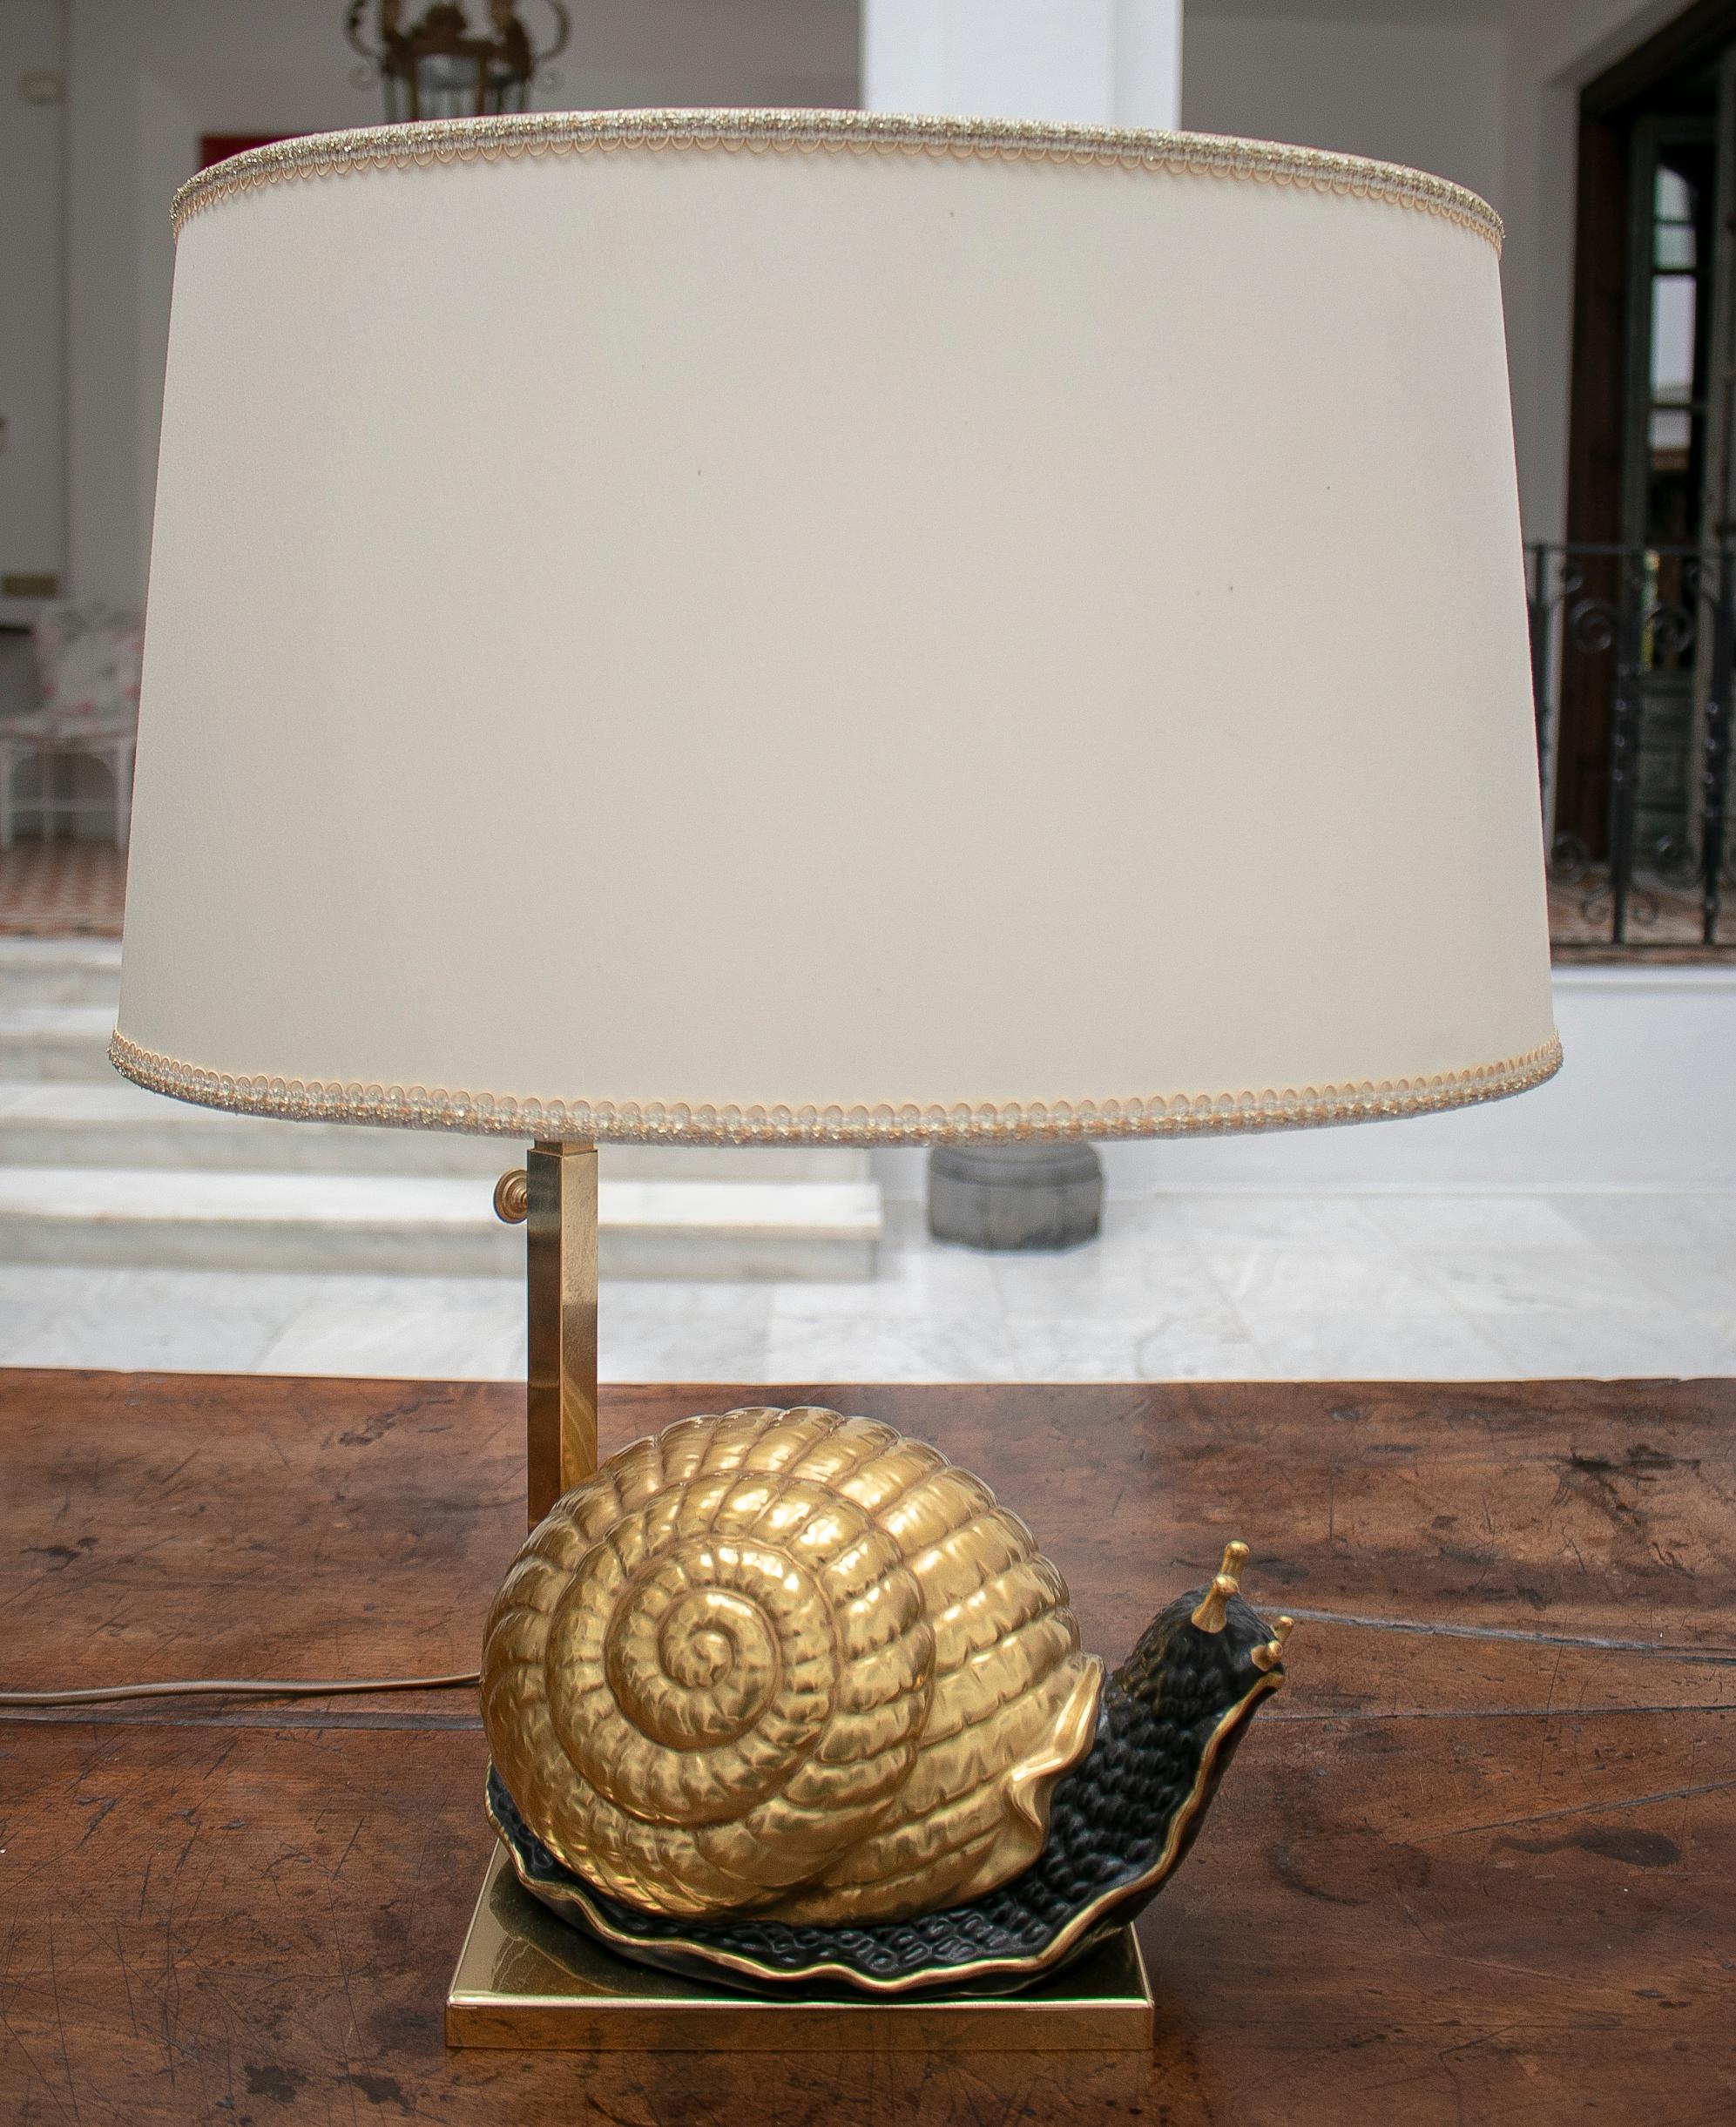 Lampe européenne des années 1950 en forme d'escargot en terre cuite avec base et abat-jour en bronze.